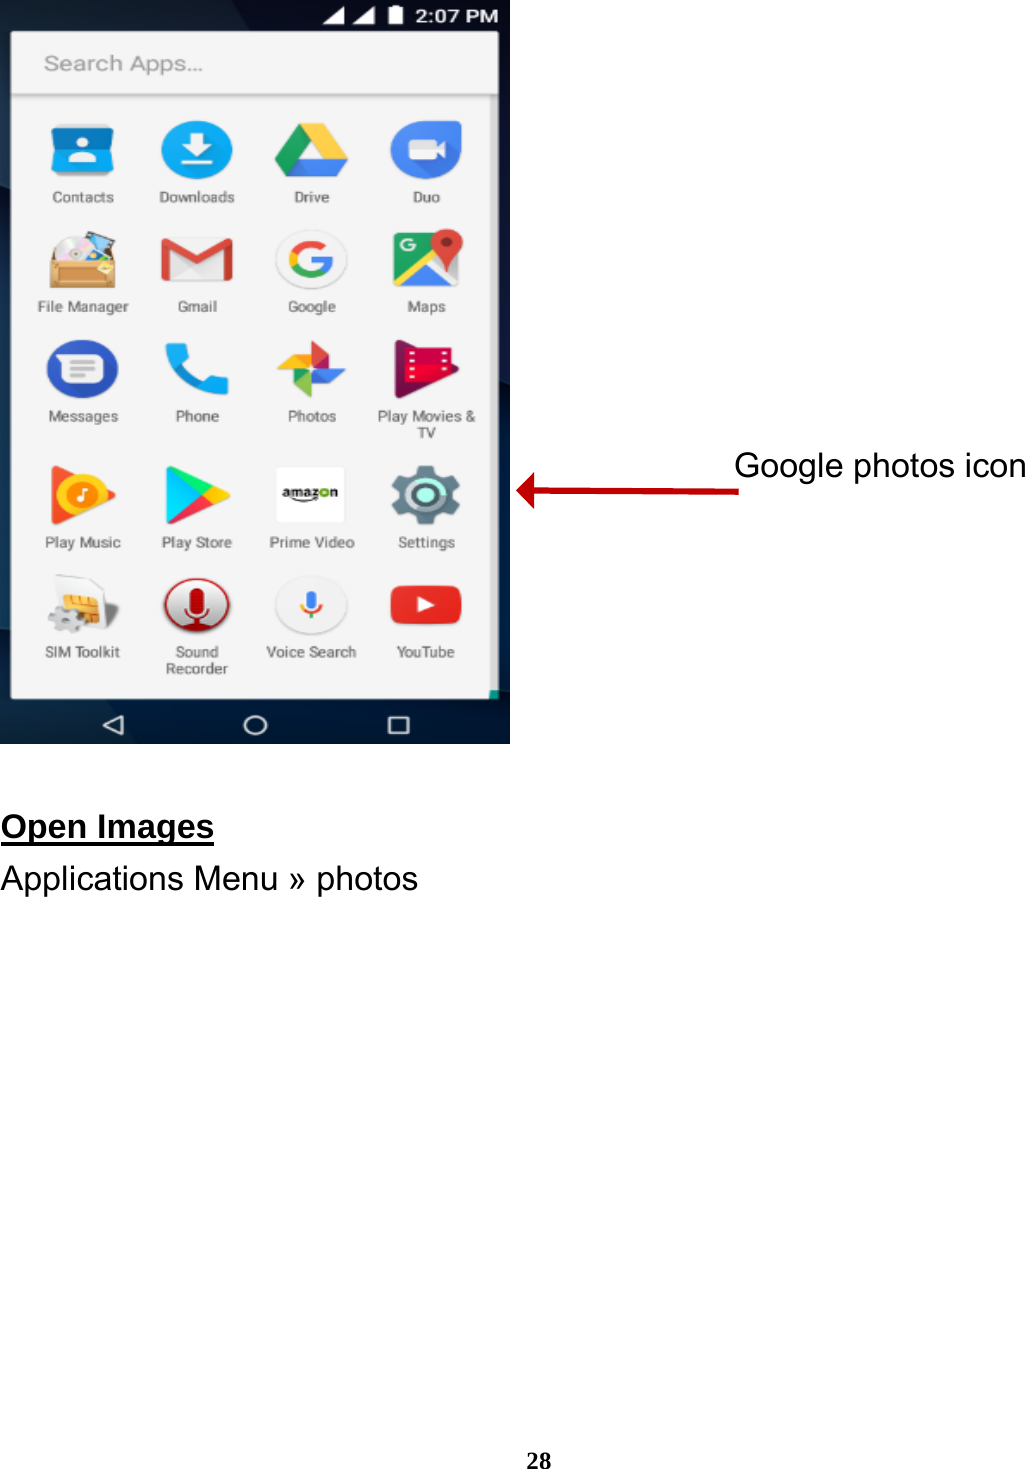  28   Open Images                                                        Applications Menu » photos Google photos icon 